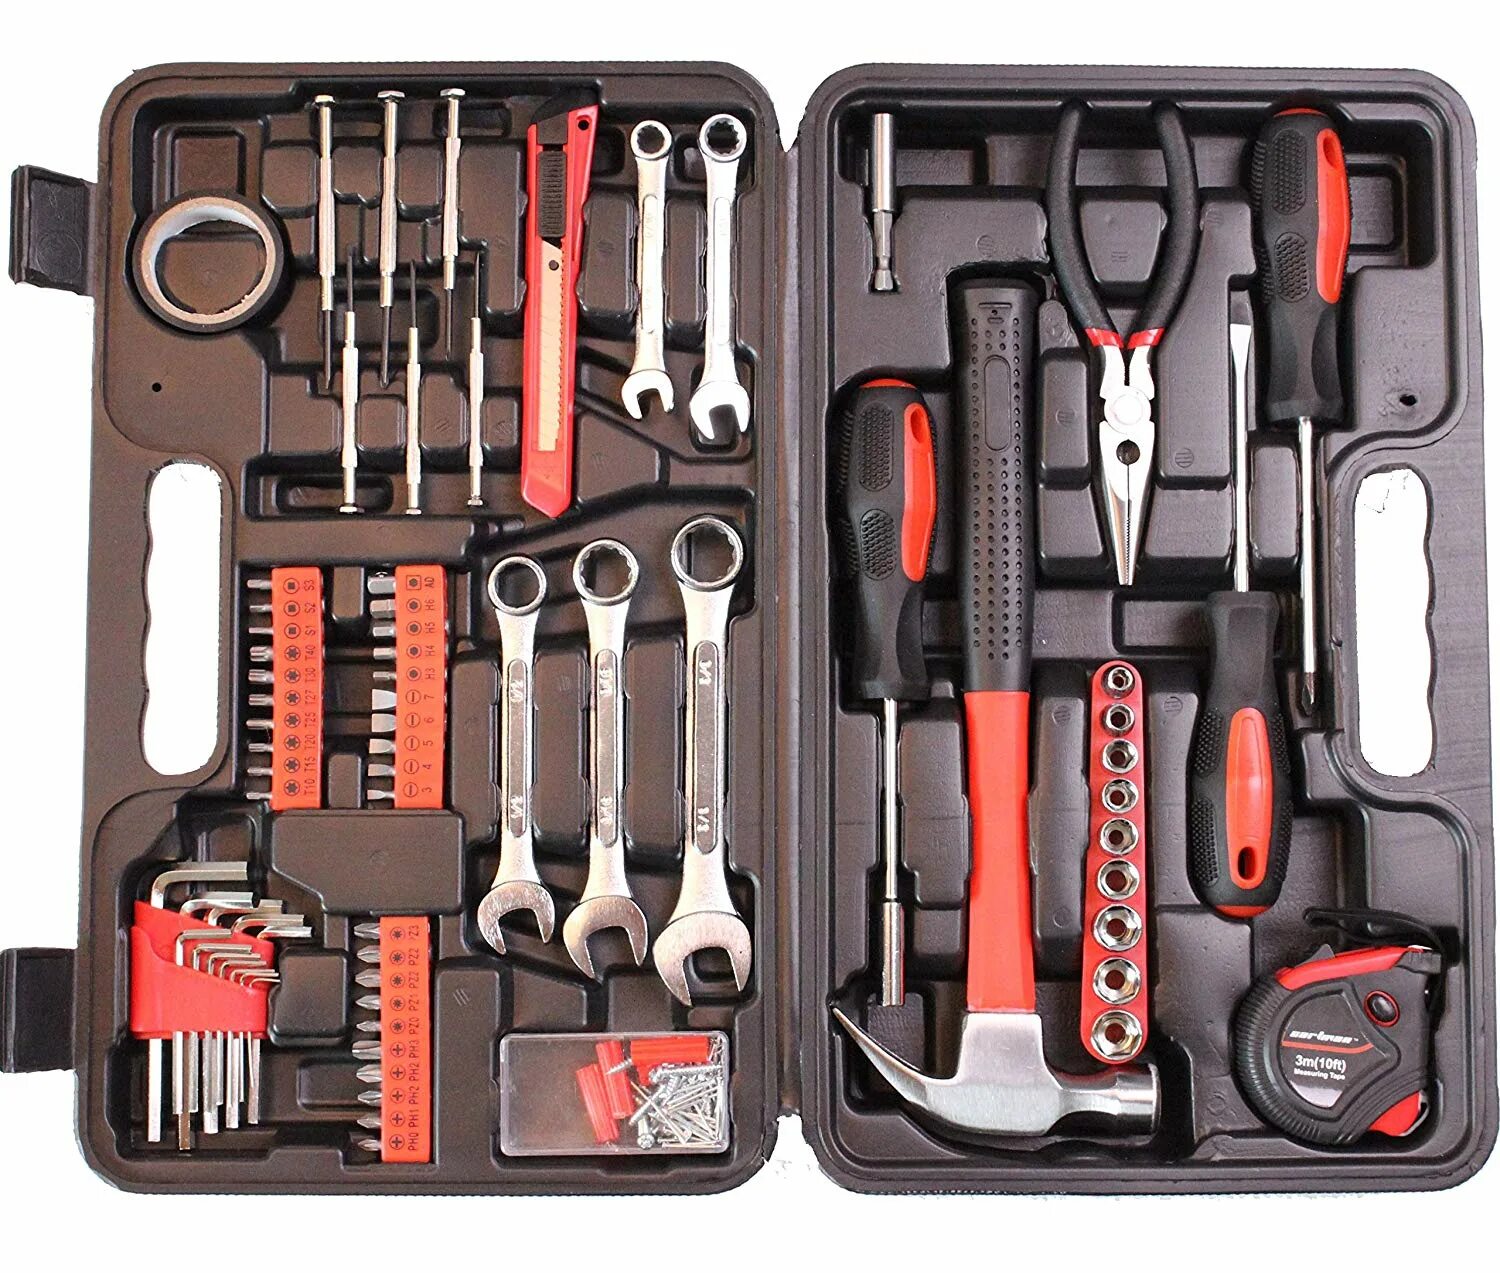 Real tools. Набор инструментов Тоол сет. Комплект инструментов Tool Kit 15-20120. Набор инструментов (Tool Kit) 276275 Lincoln. Набор автомеханика и-148 м, большой.